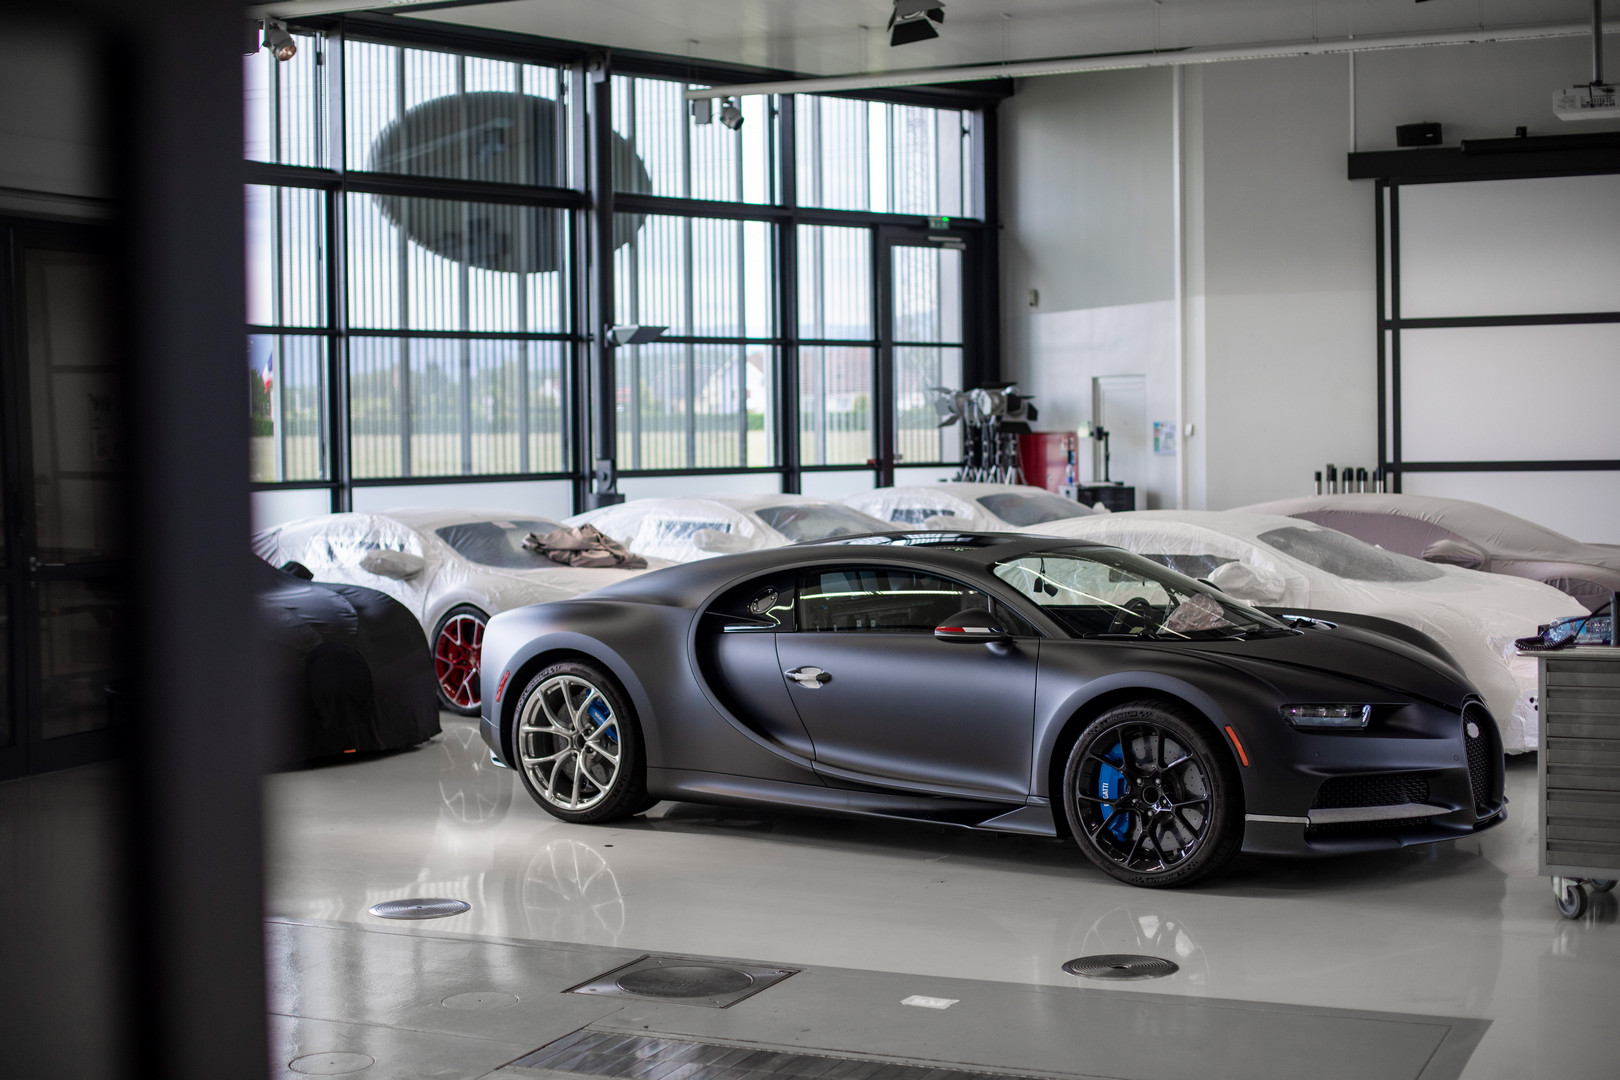 Ожидается, что производство гиперкара стоимостью 2,4 миллиона евро составит 500 автомобилей. В своем пресс-релизе Bugatti подтвердил, что 400 из этих автомобилей уже в работе. Возможно, остальные - это специальных изданий?